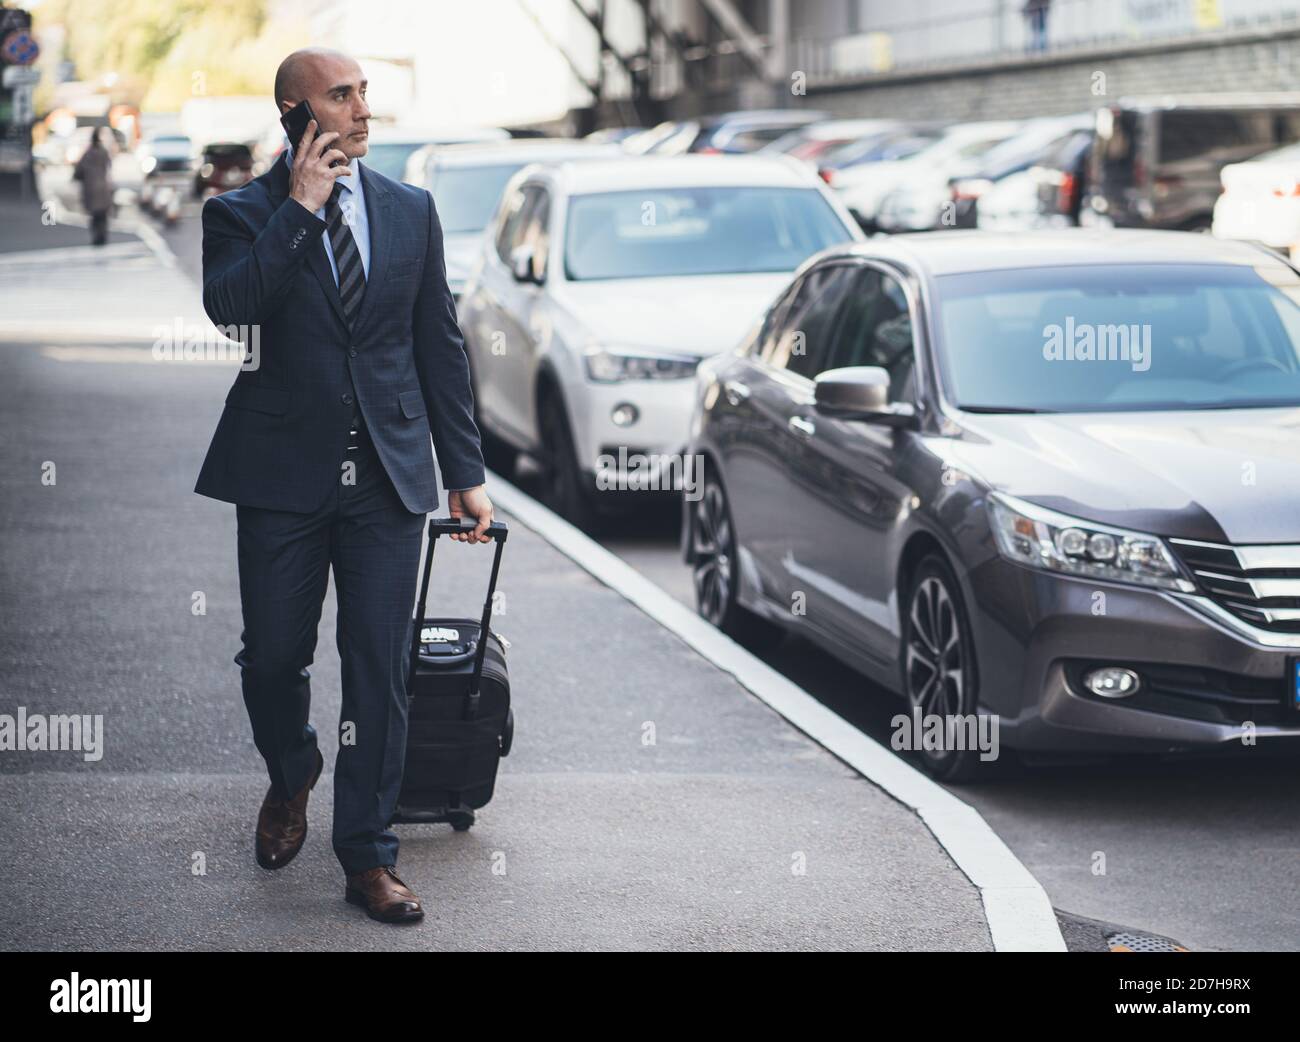 Homme d'affaires parle sur téléphone portable tenant une valise à la main. Homme caucasien d'âge moyen marchant le long du trottoir devant les voitures garées. Concept de voyage d'affaires Banque D'Images